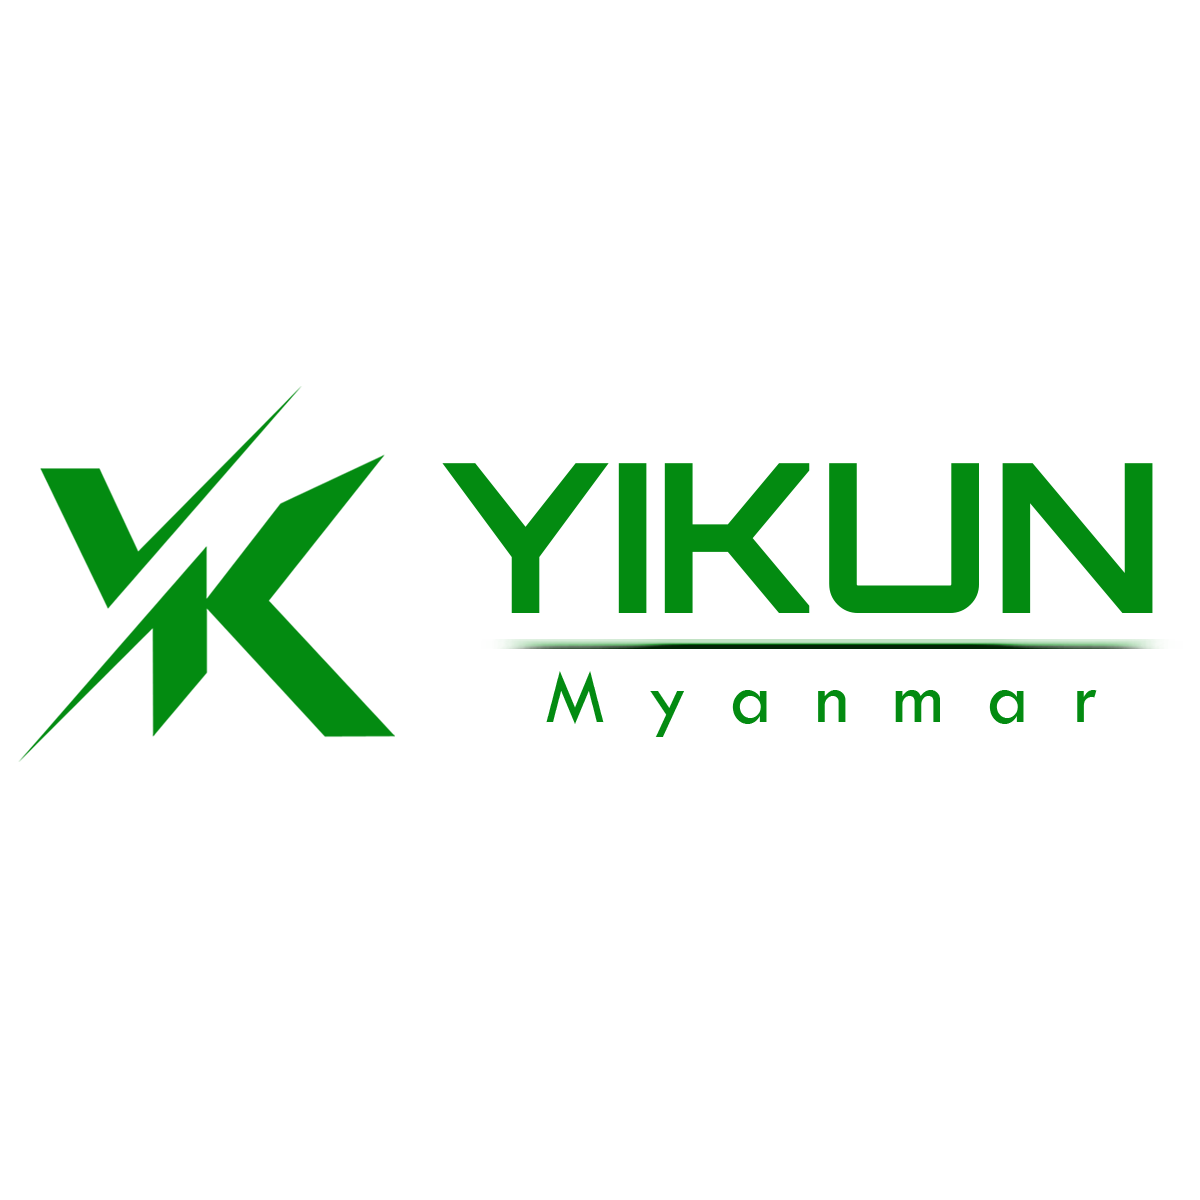 YiKun Mobile Accessories Company